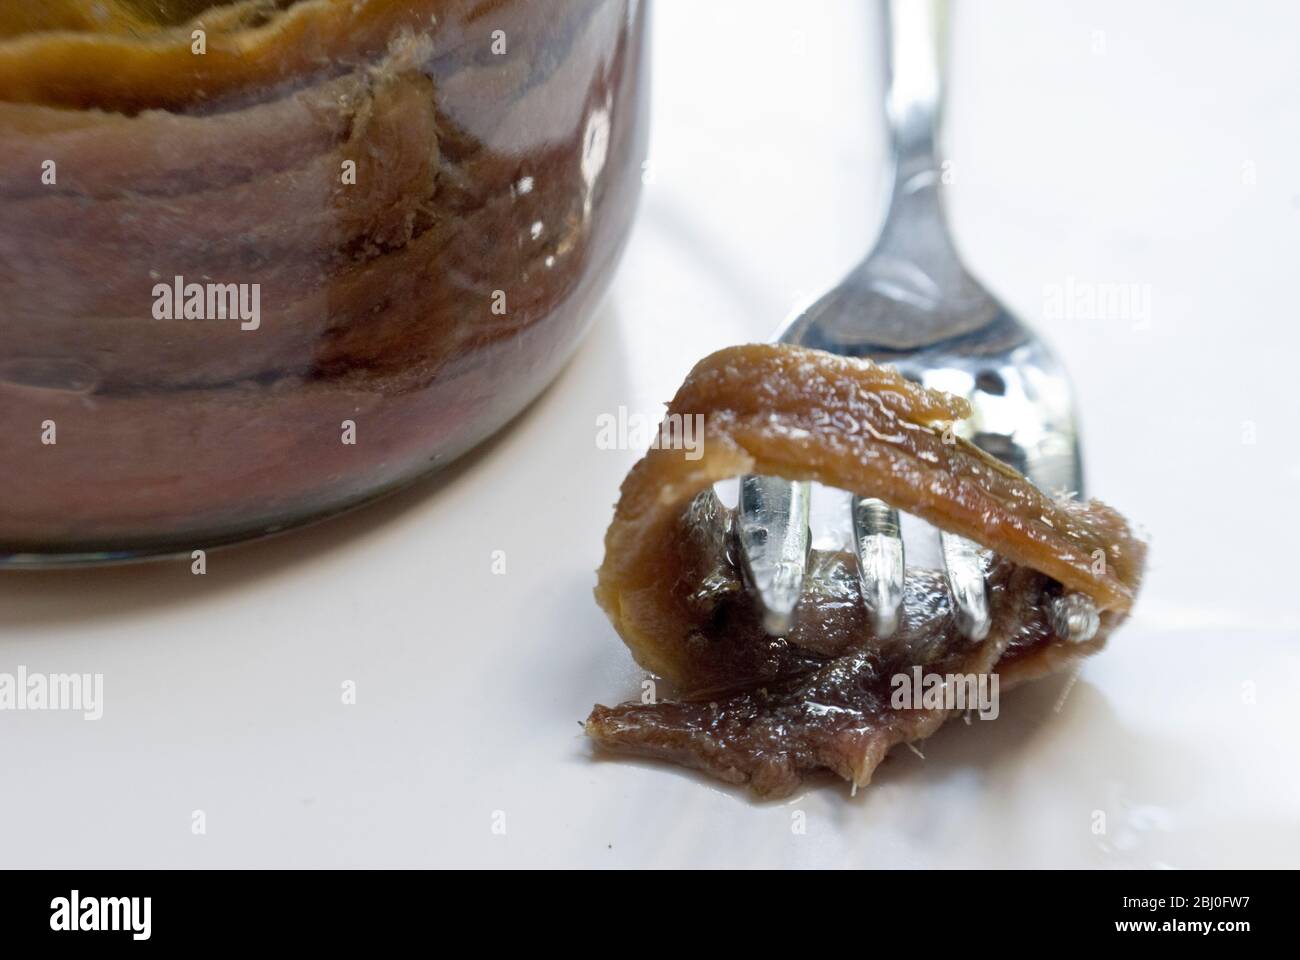 Filets der Sardellen in Öl im Einmachglas, mit einem einzigen Filet auf der Gabel - Stockfoto